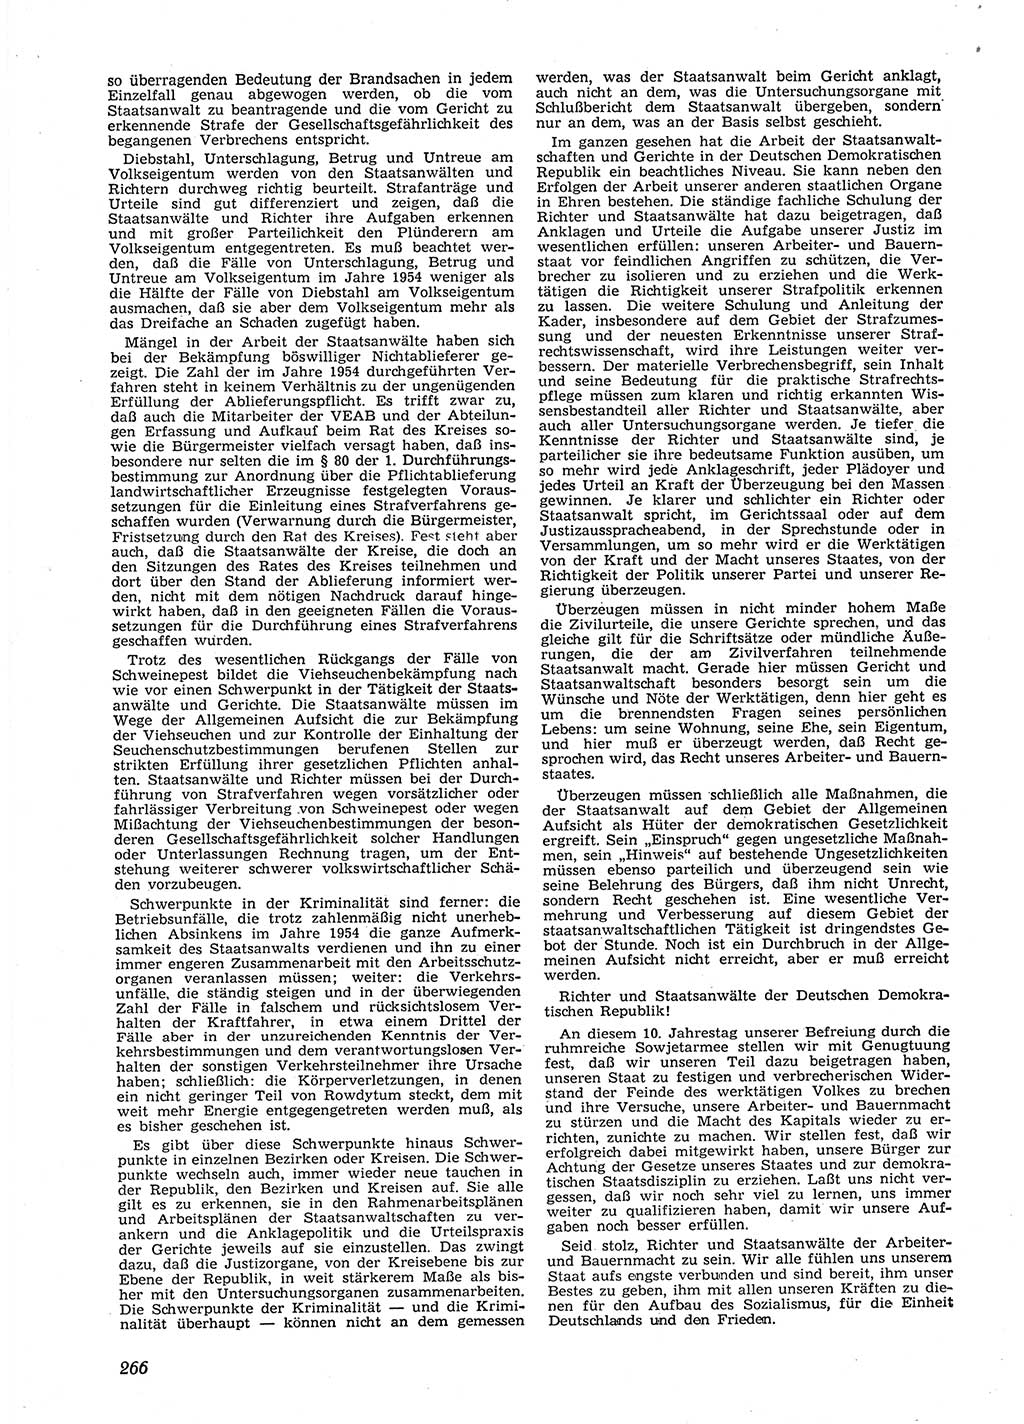 Neue Justiz (NJ), Zeitschrift für Recht und Rechtswissenschaft [Deutsche Demokratische Republik (DDR)], 9. Jahrgang 1955, Seite 266 (NJ DDR 1955, S. 266)